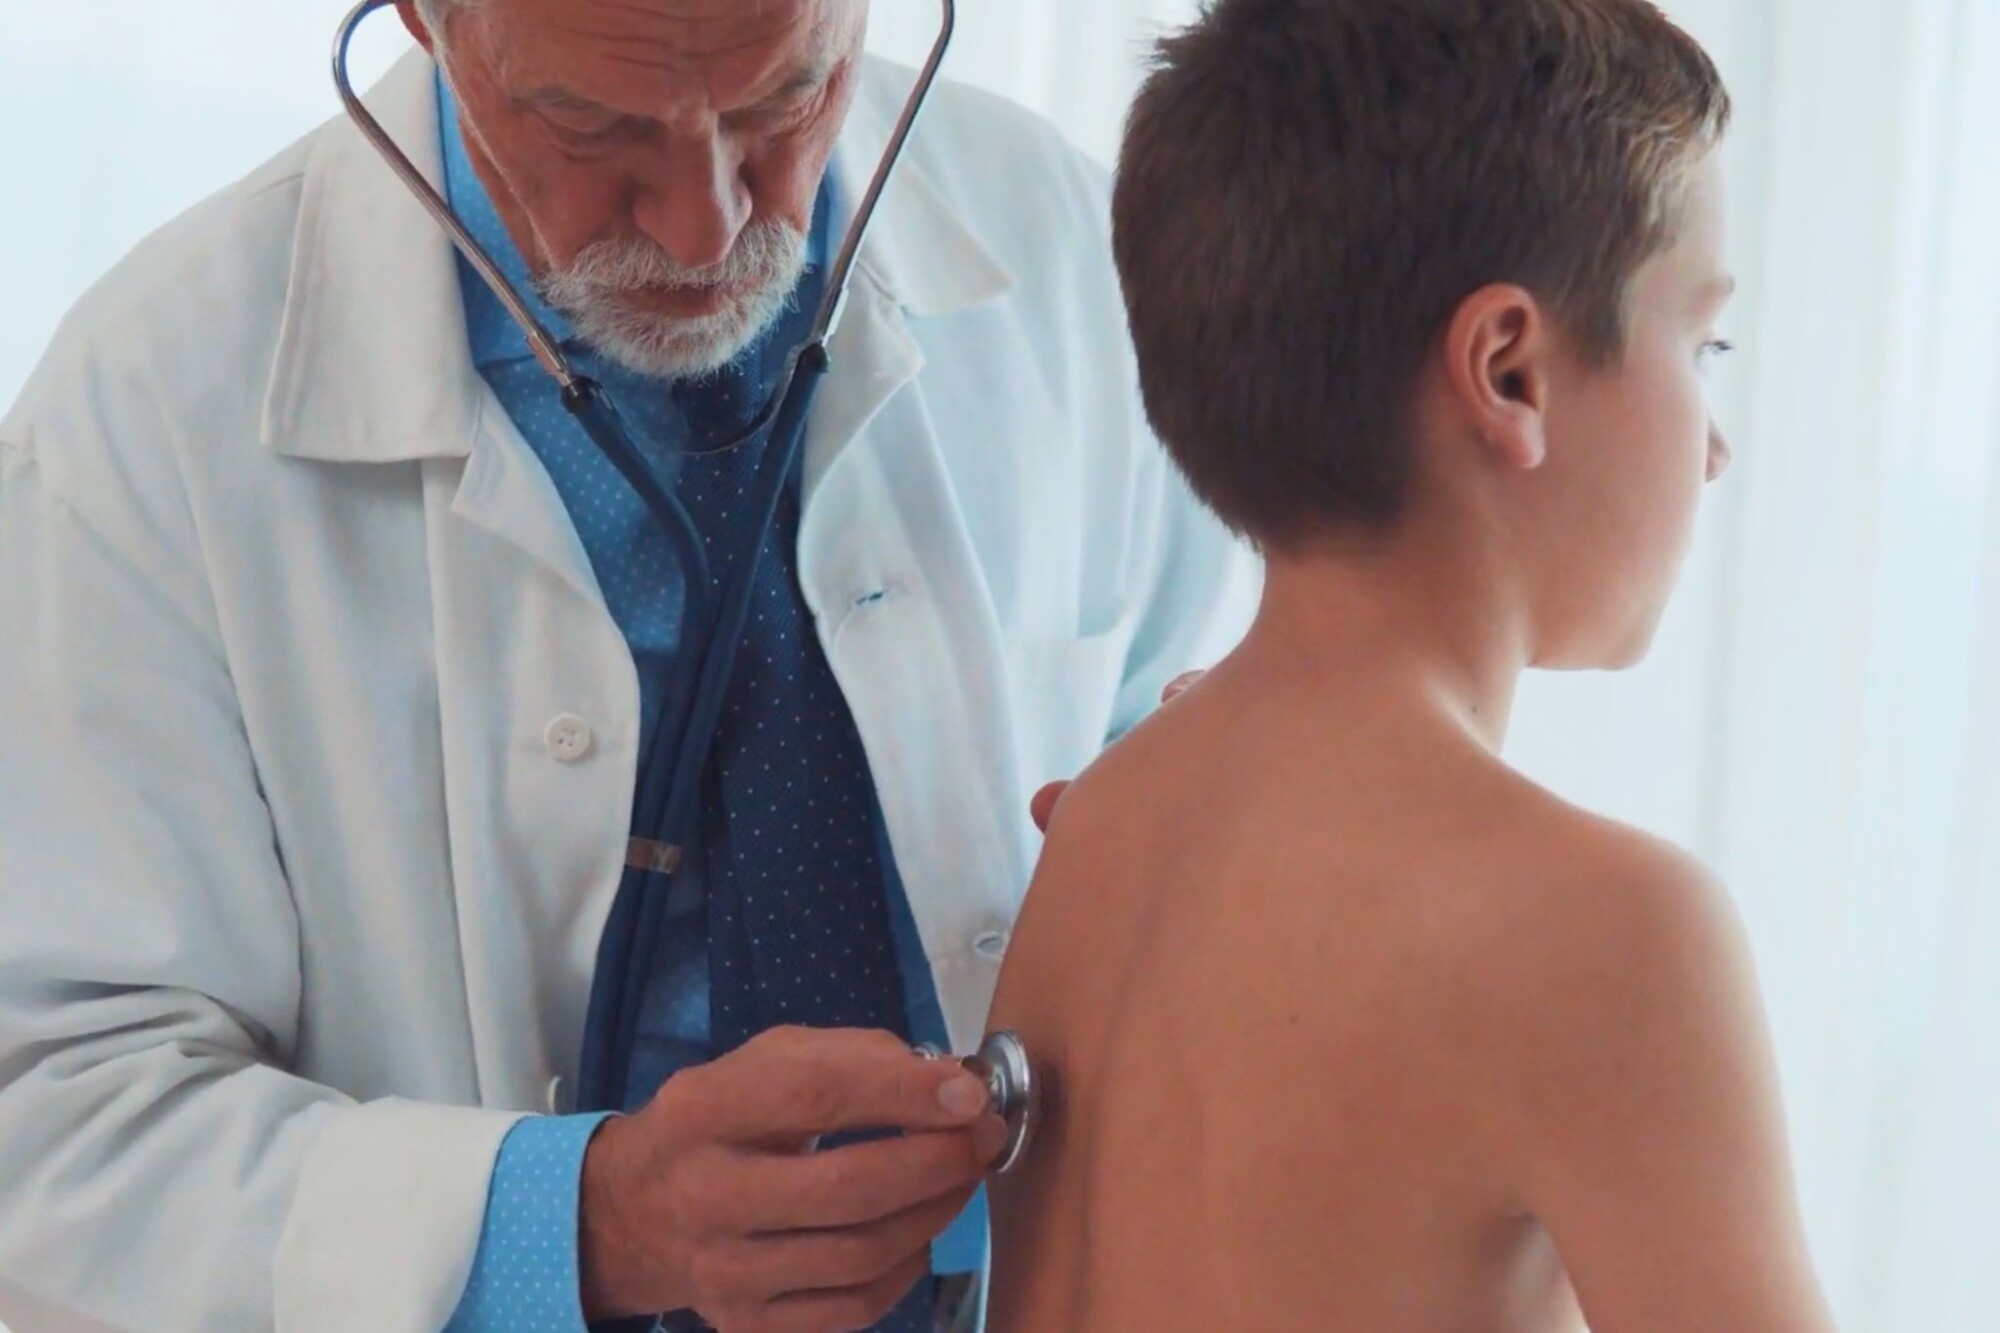 Cirugías transgénero en niños: Enfermera cuestiona estándares médicos para menores